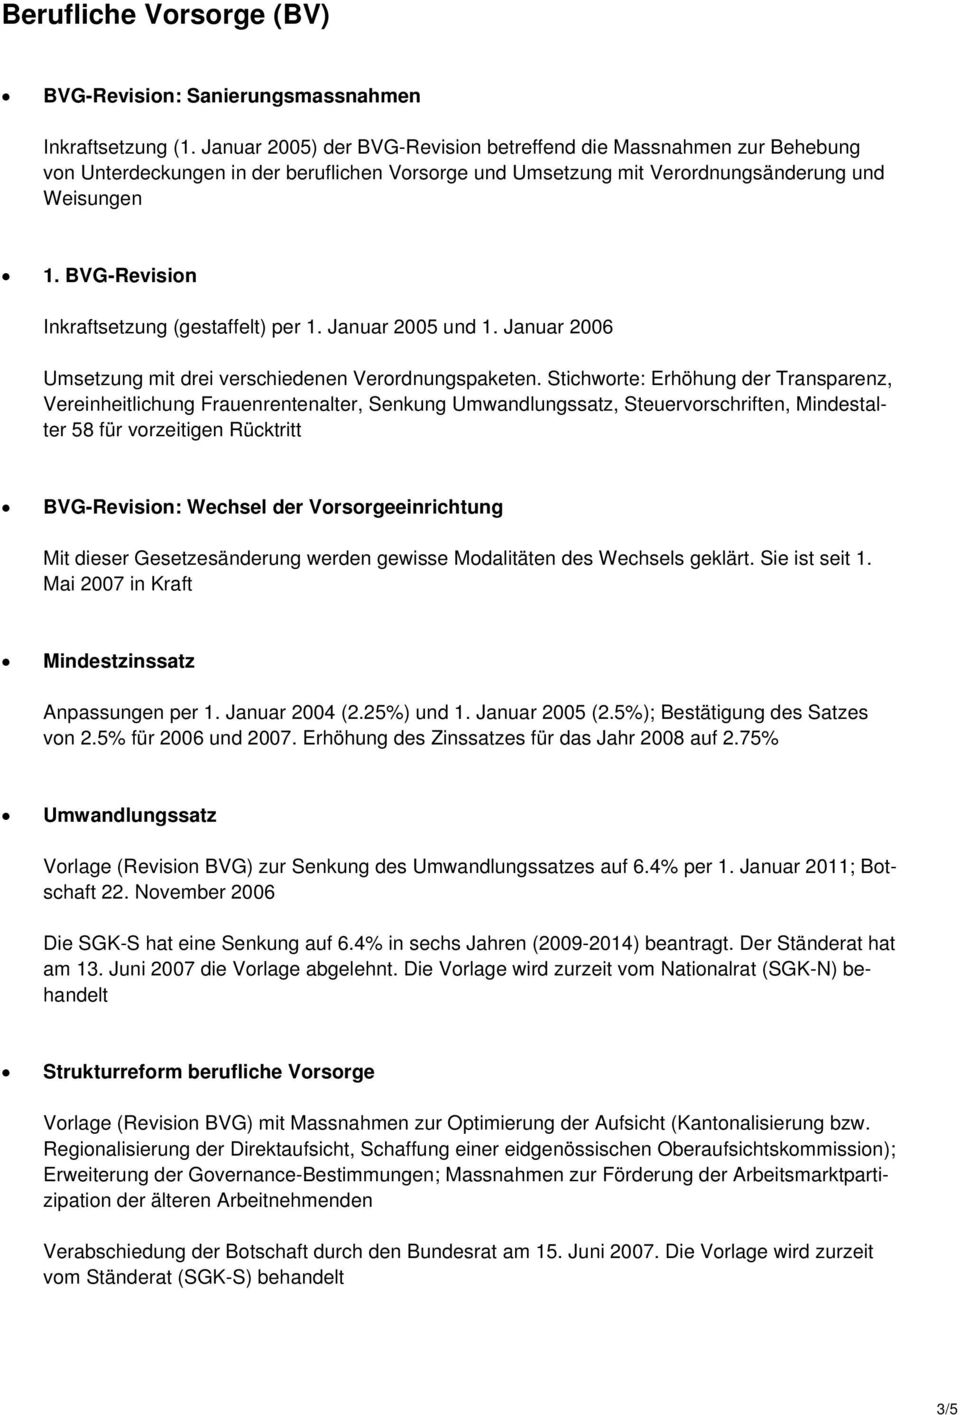 BVG-Revision Inkraftsetzung (gestaffelt) per 1. Januar 2005 und 1. Januar 2006 Umsetzung mit drei verschiedenen Verordnungspaketen.